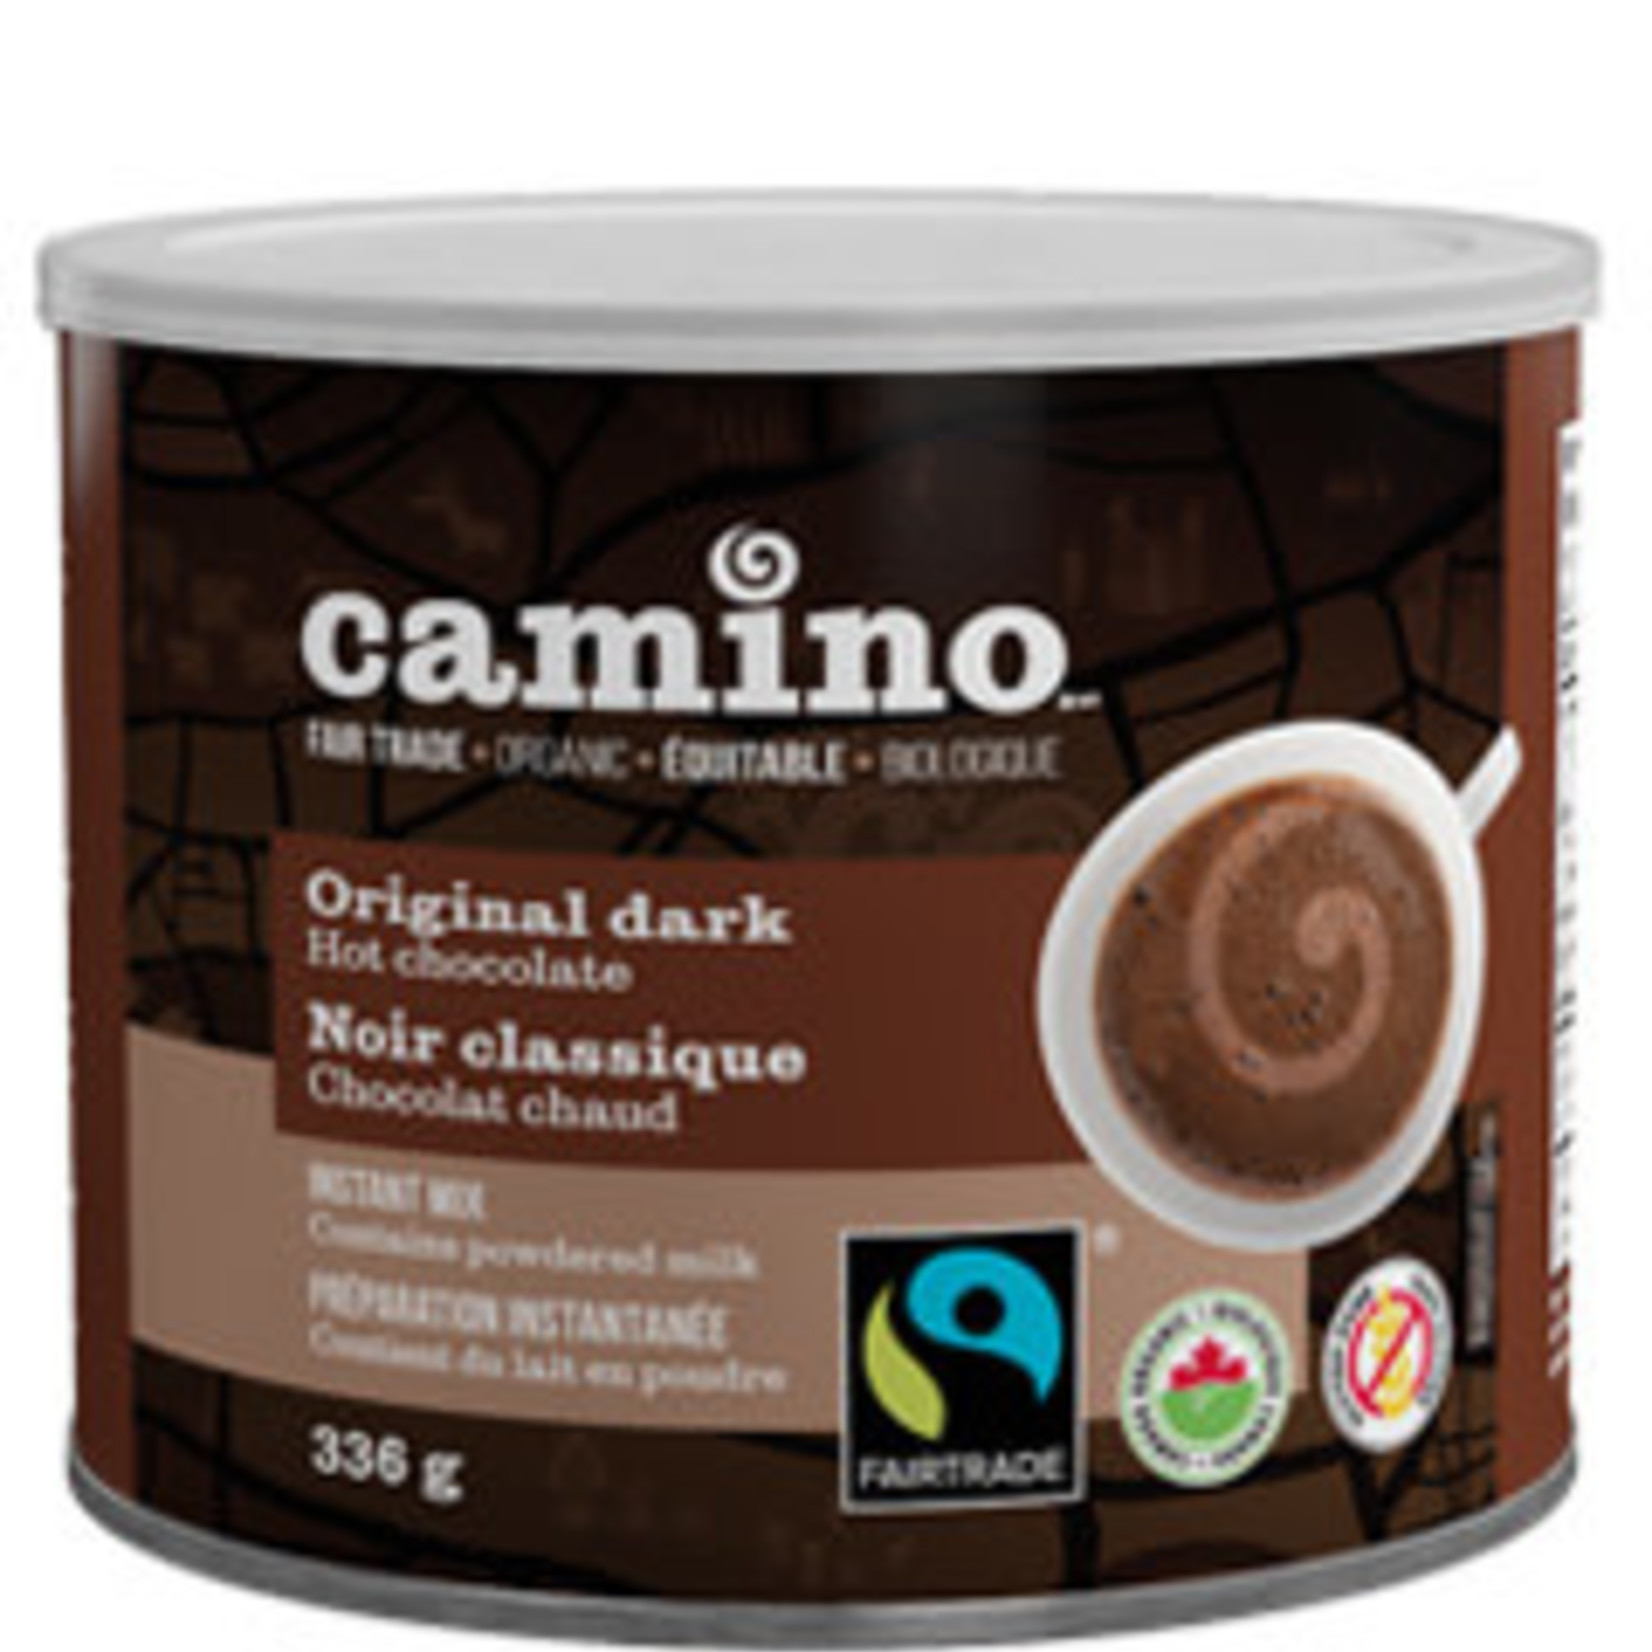 Camino Hot Chocolate Camino Dark